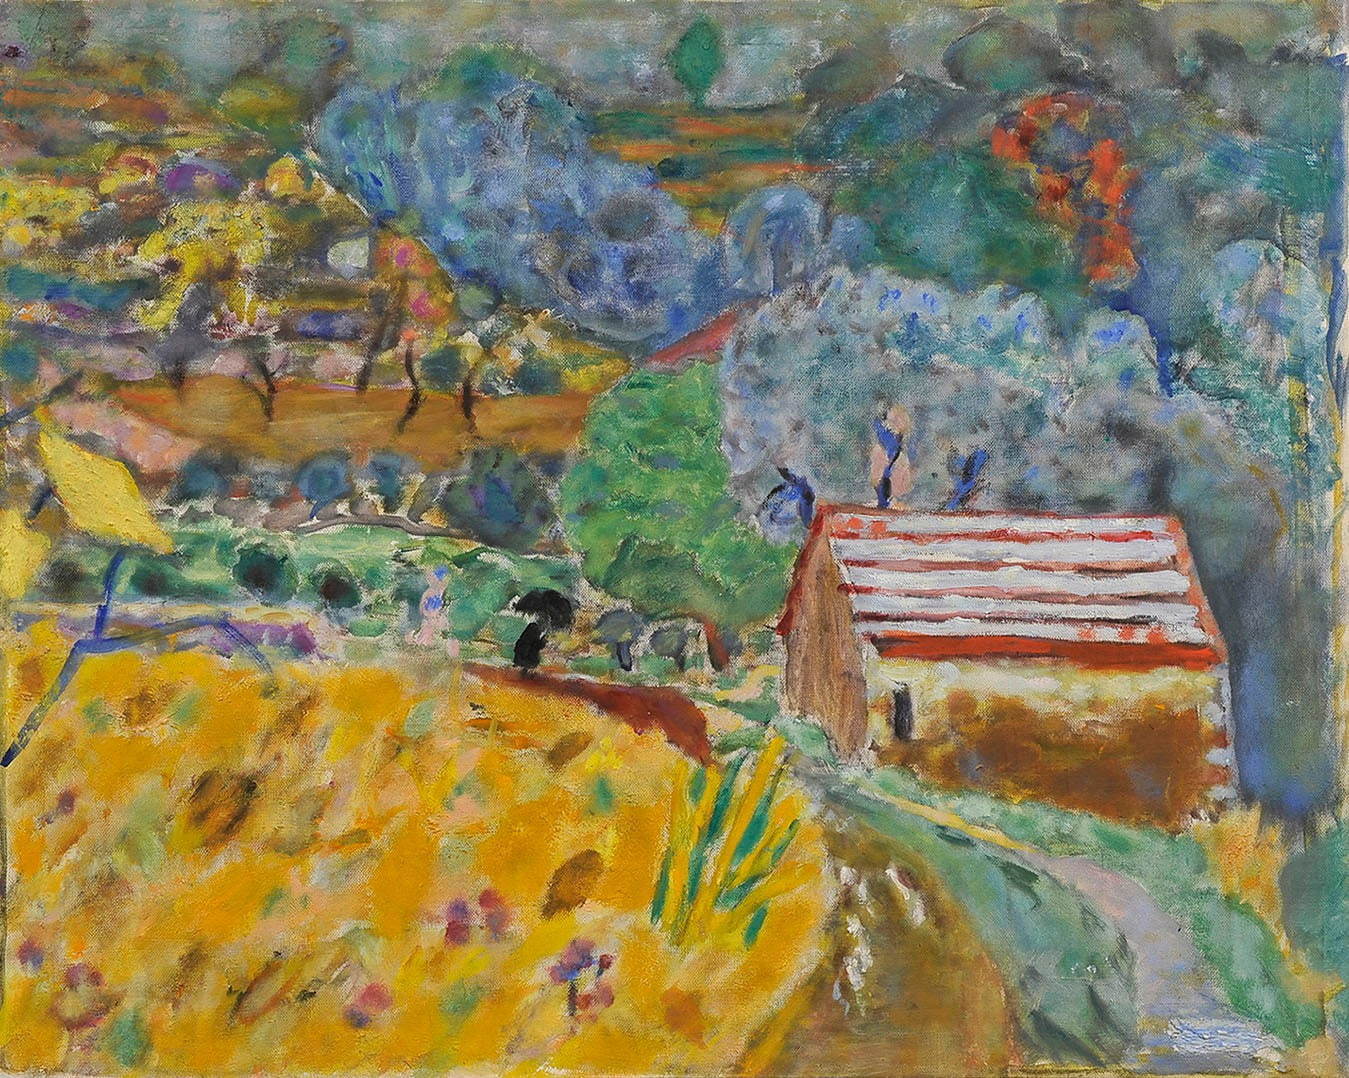 ピエール・ボナール《雨降りのル・カネ風景》1946年 油彩・キャンヴァス 上原美術館